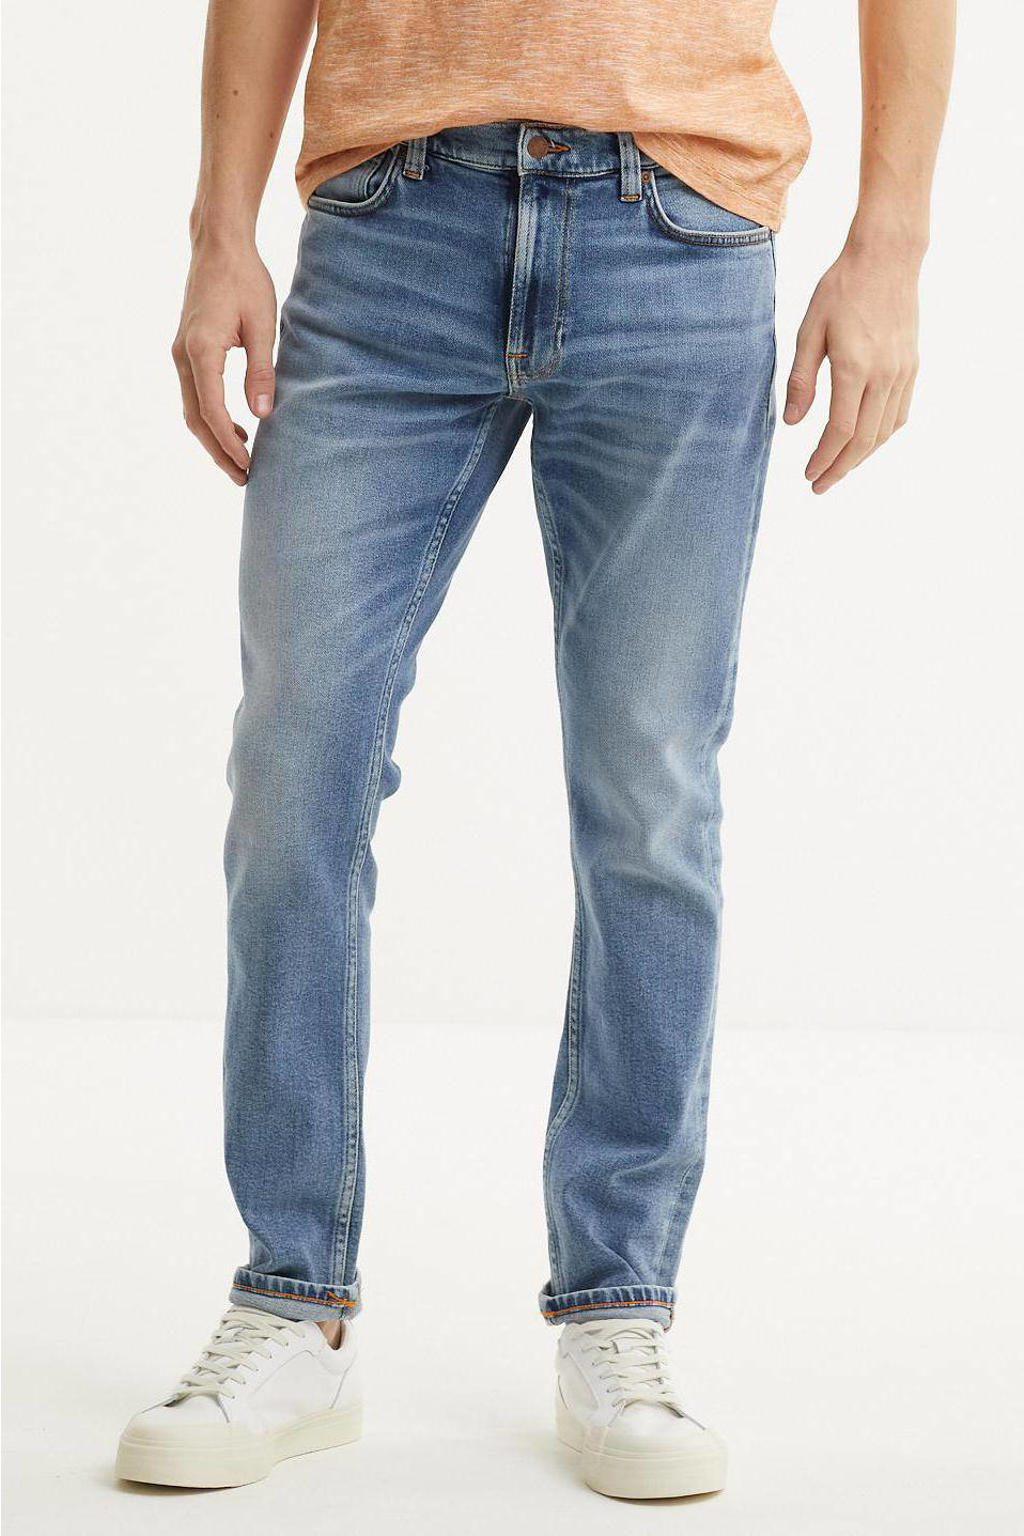 Nudie Jeans tapered fit jeans Lean Dean indigo hub